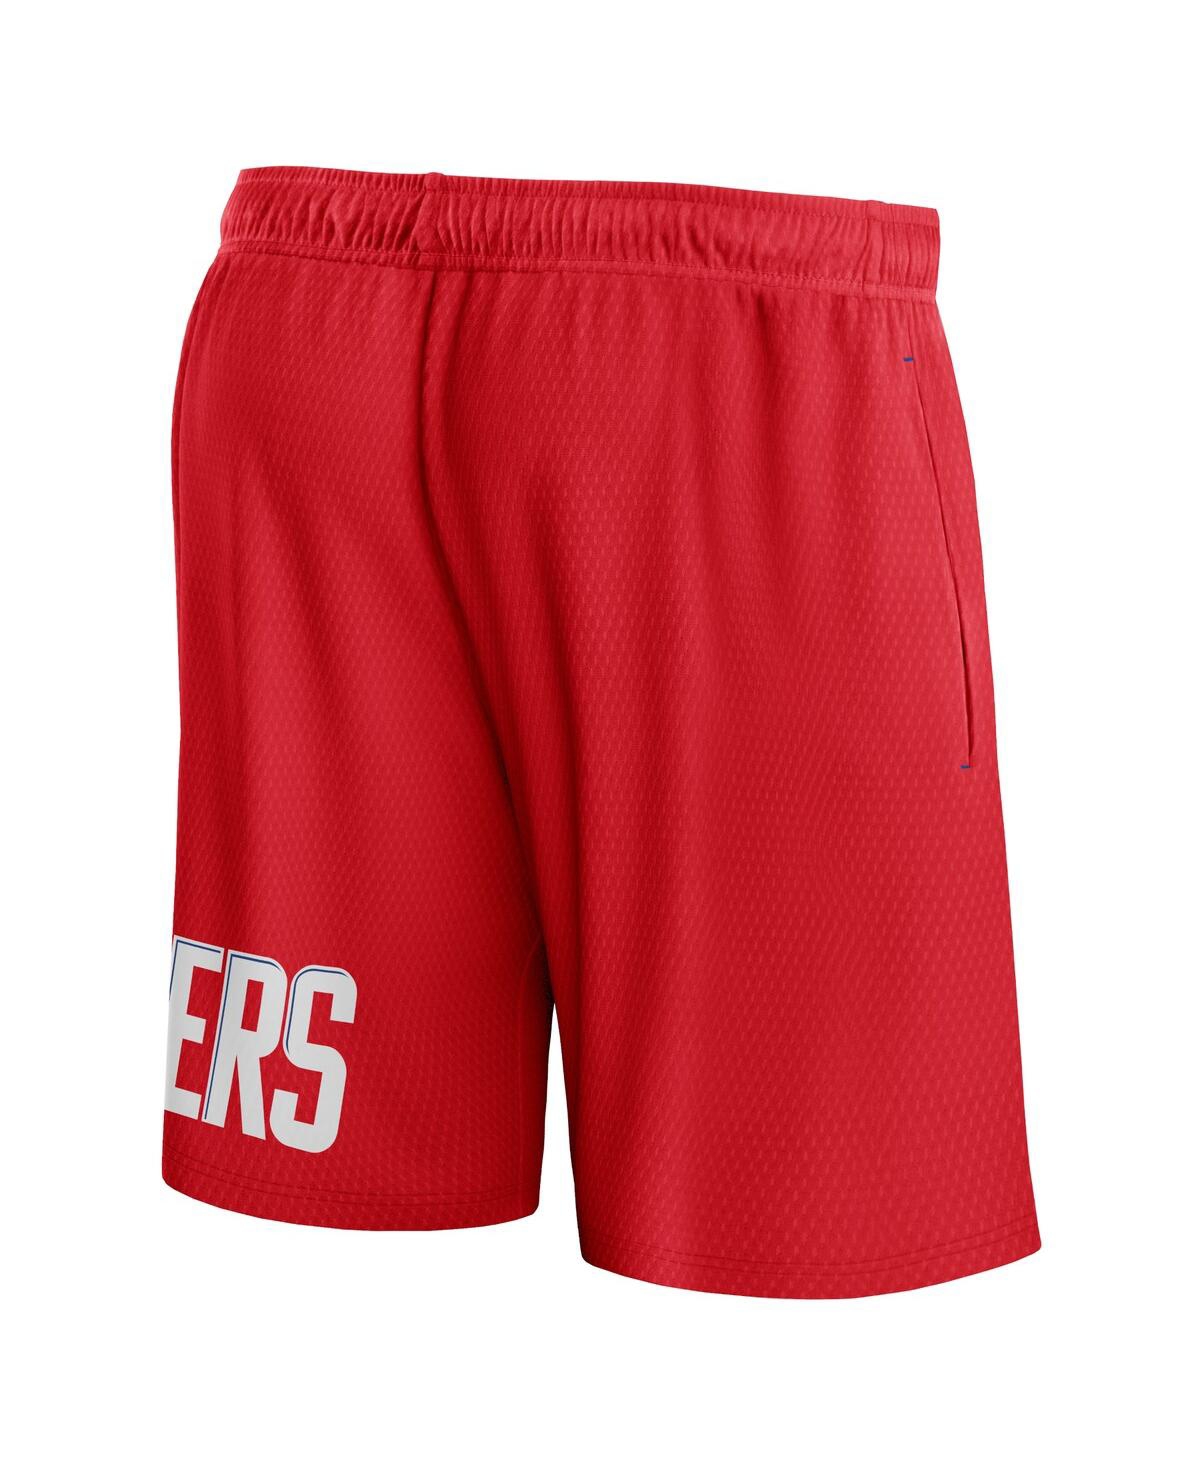 Shop Fanatics Men's  Red La Clippers Free Throw Mesh Shorts